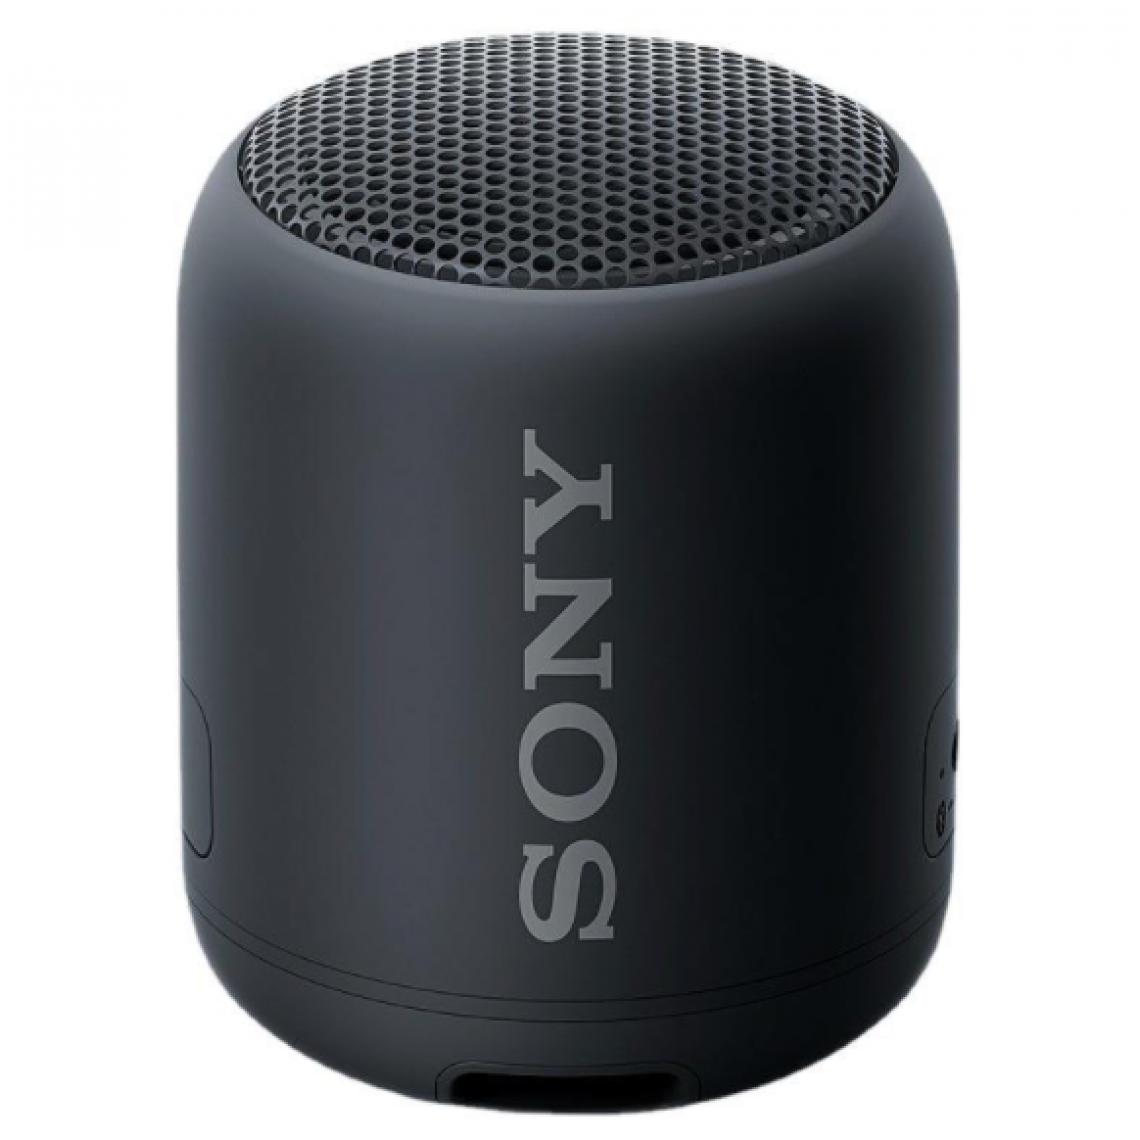 Chrono - Sony SRS-XB12, un haut-parleur sans fil étanche portable compact avec EXTRA BASSï¼Noir) - Enceintes Hifi